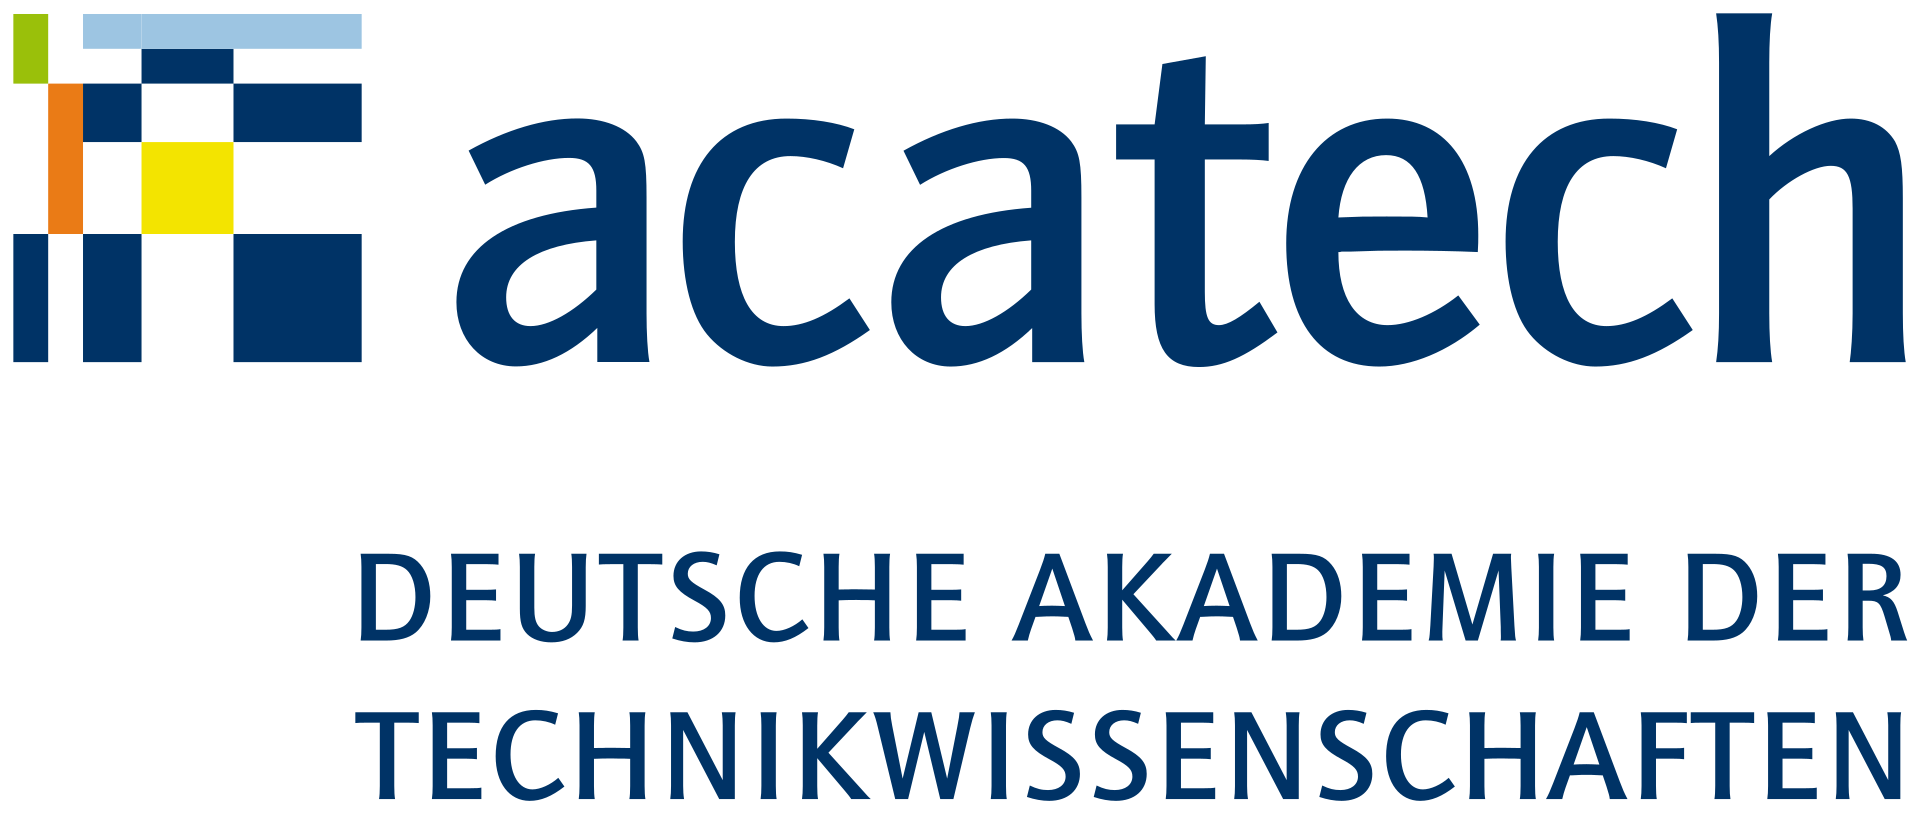 Logo der Deutschen Akademie der Technikwissenschaften